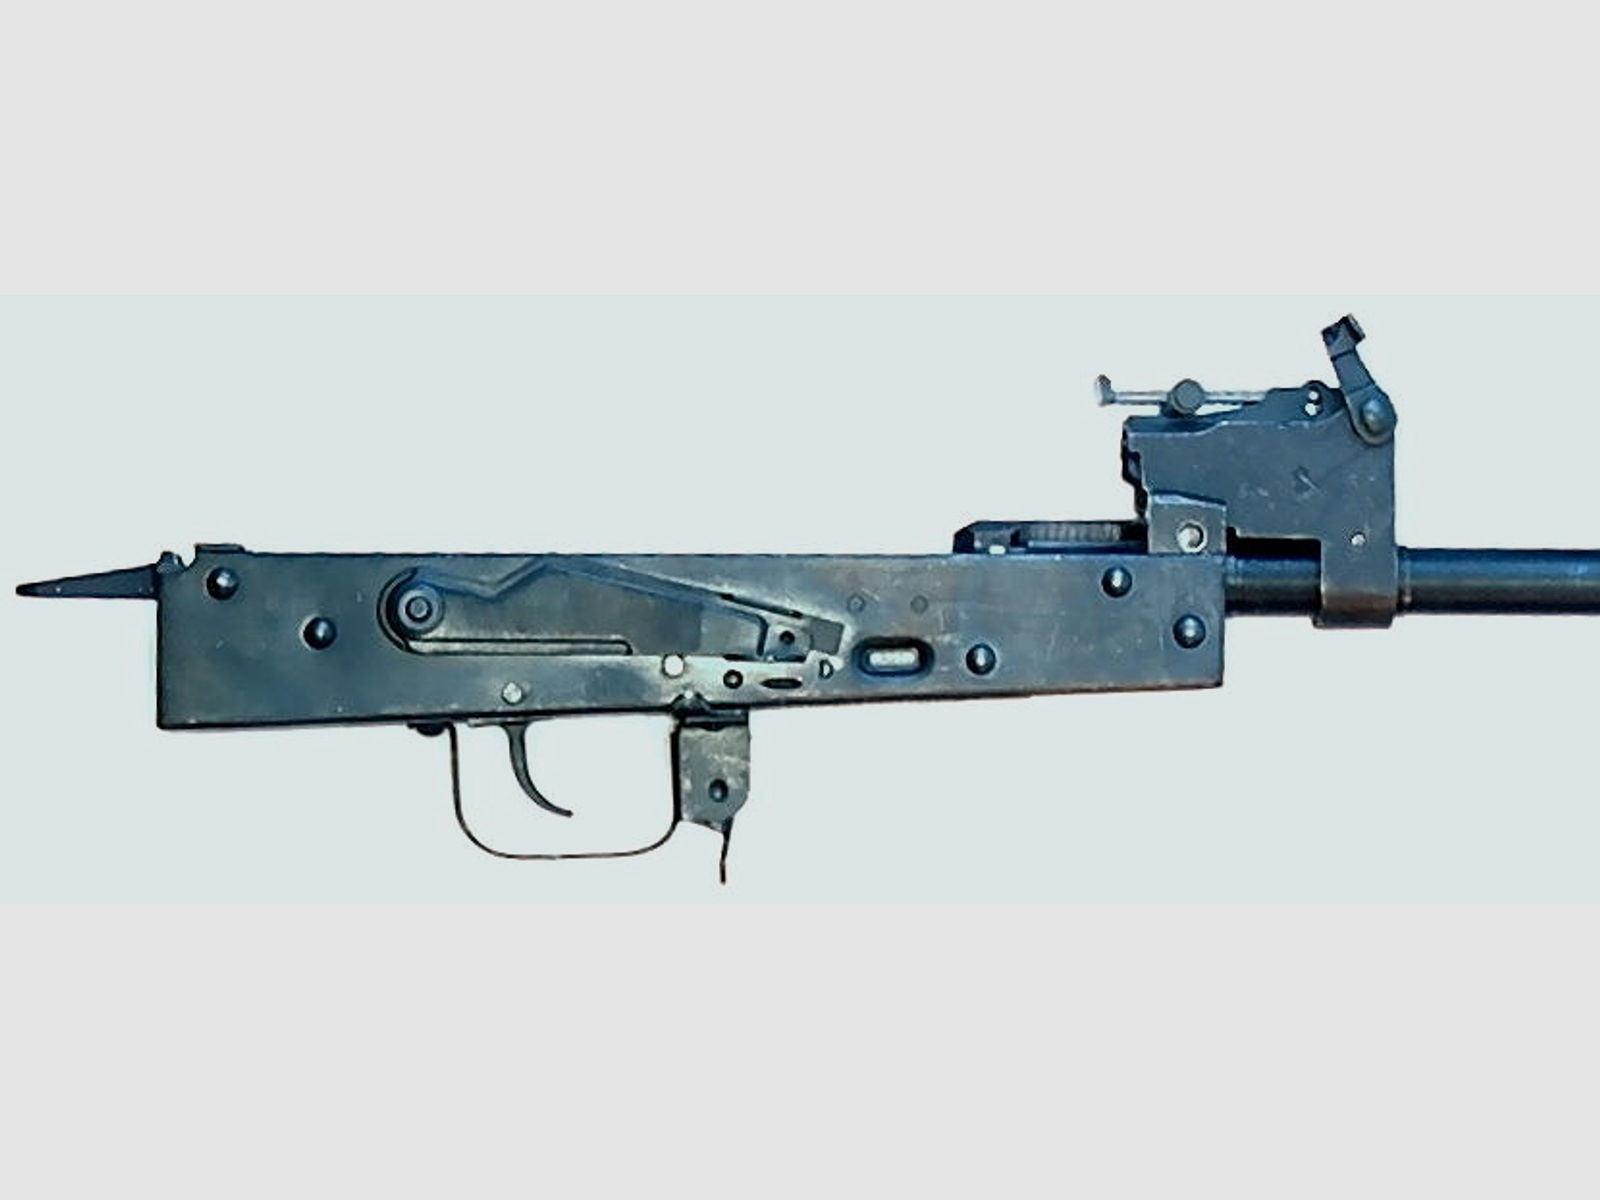 AK47M SN CO2 YUNKER 4,5mm Vers.3 AKM AK-47 Luftgewehr